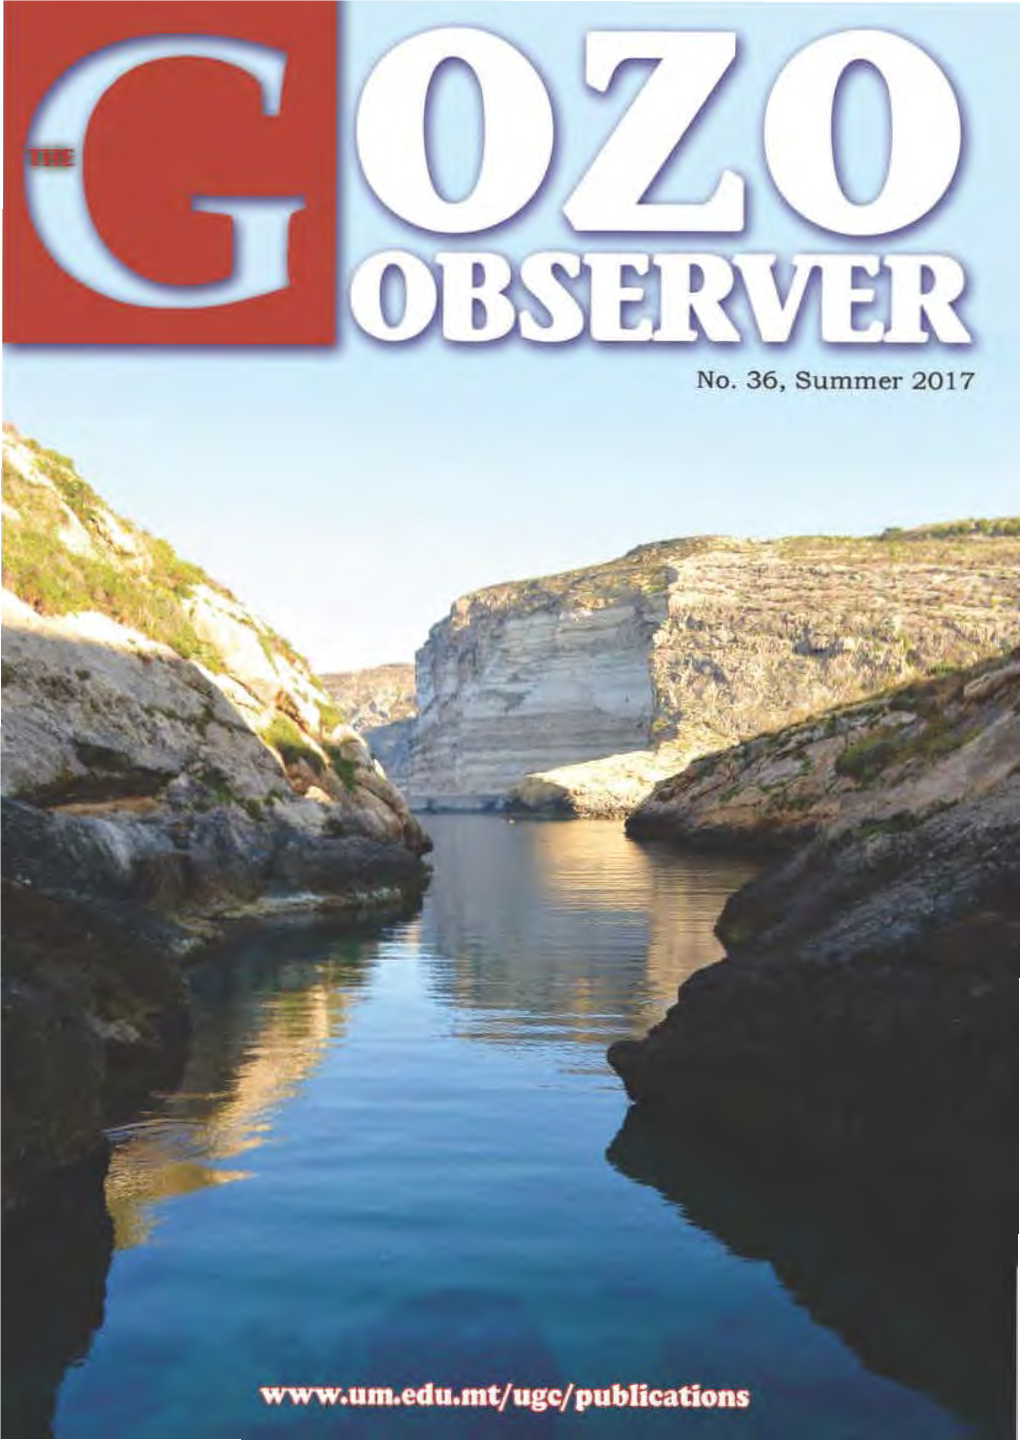 The Gozo Observer 46 Lino Briguglio